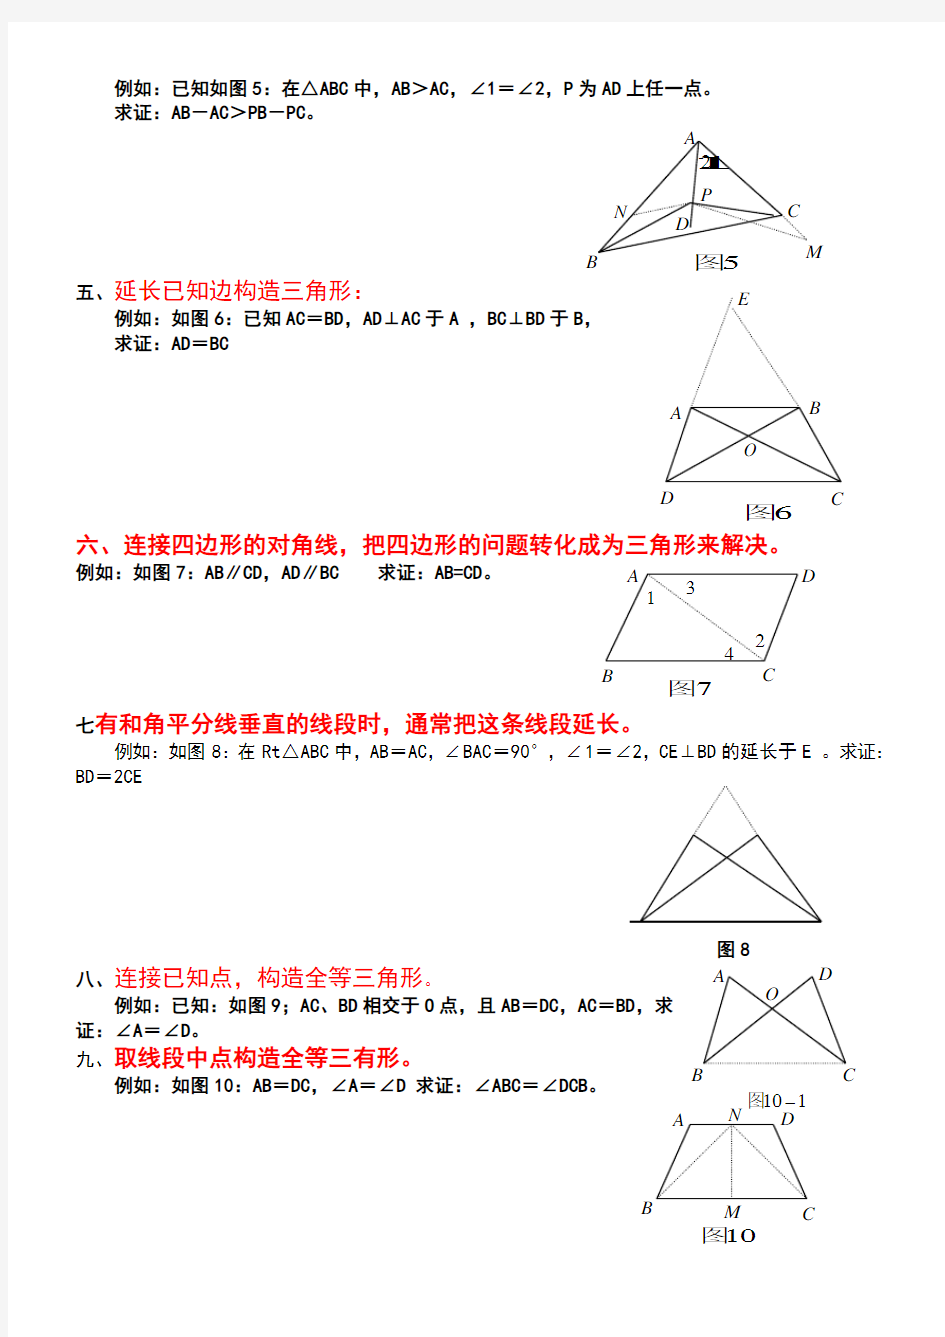 全等三角形中常见辅助线的添加方法举例